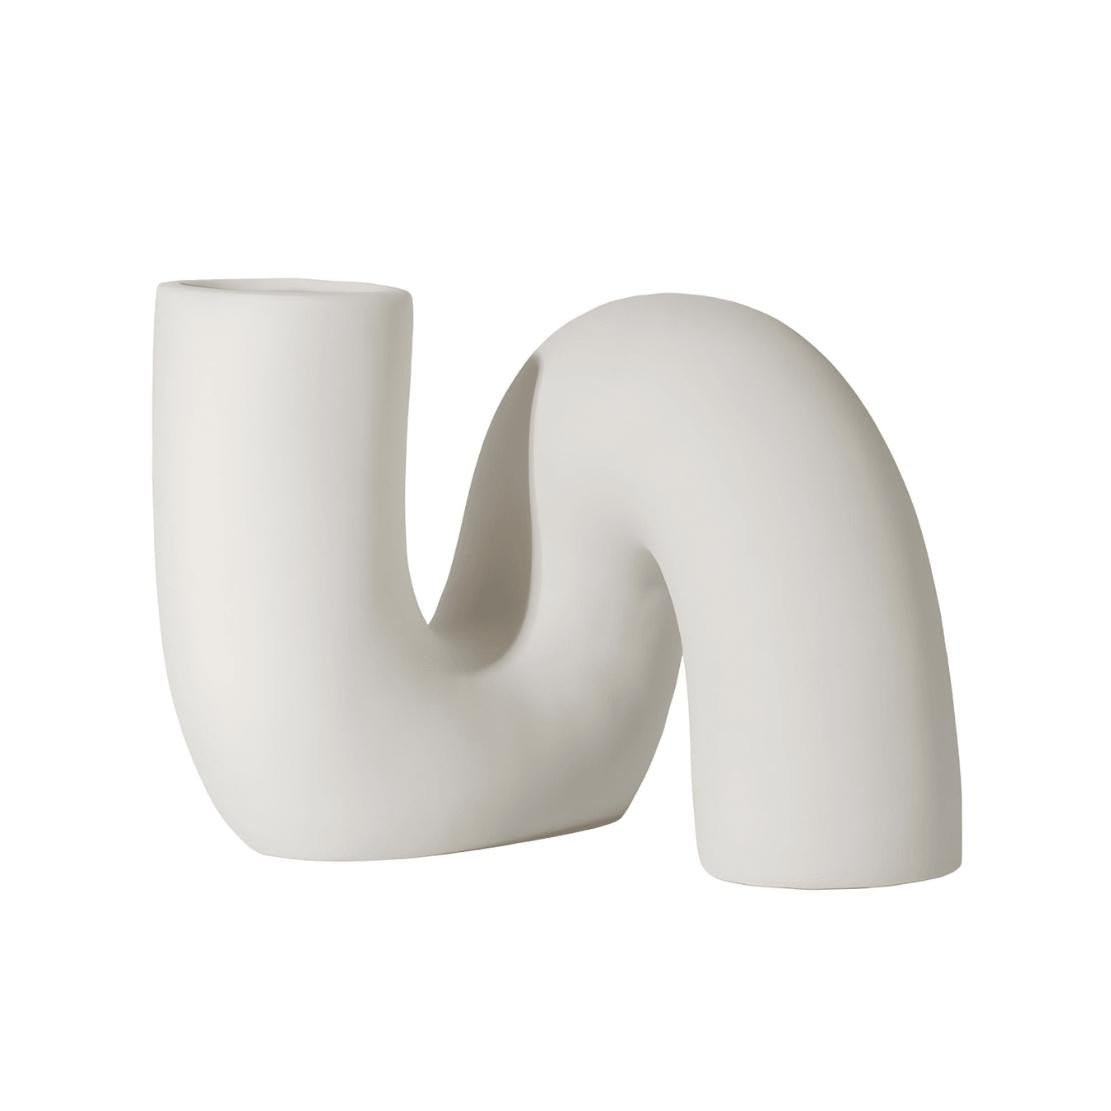 White ceramic twist vase